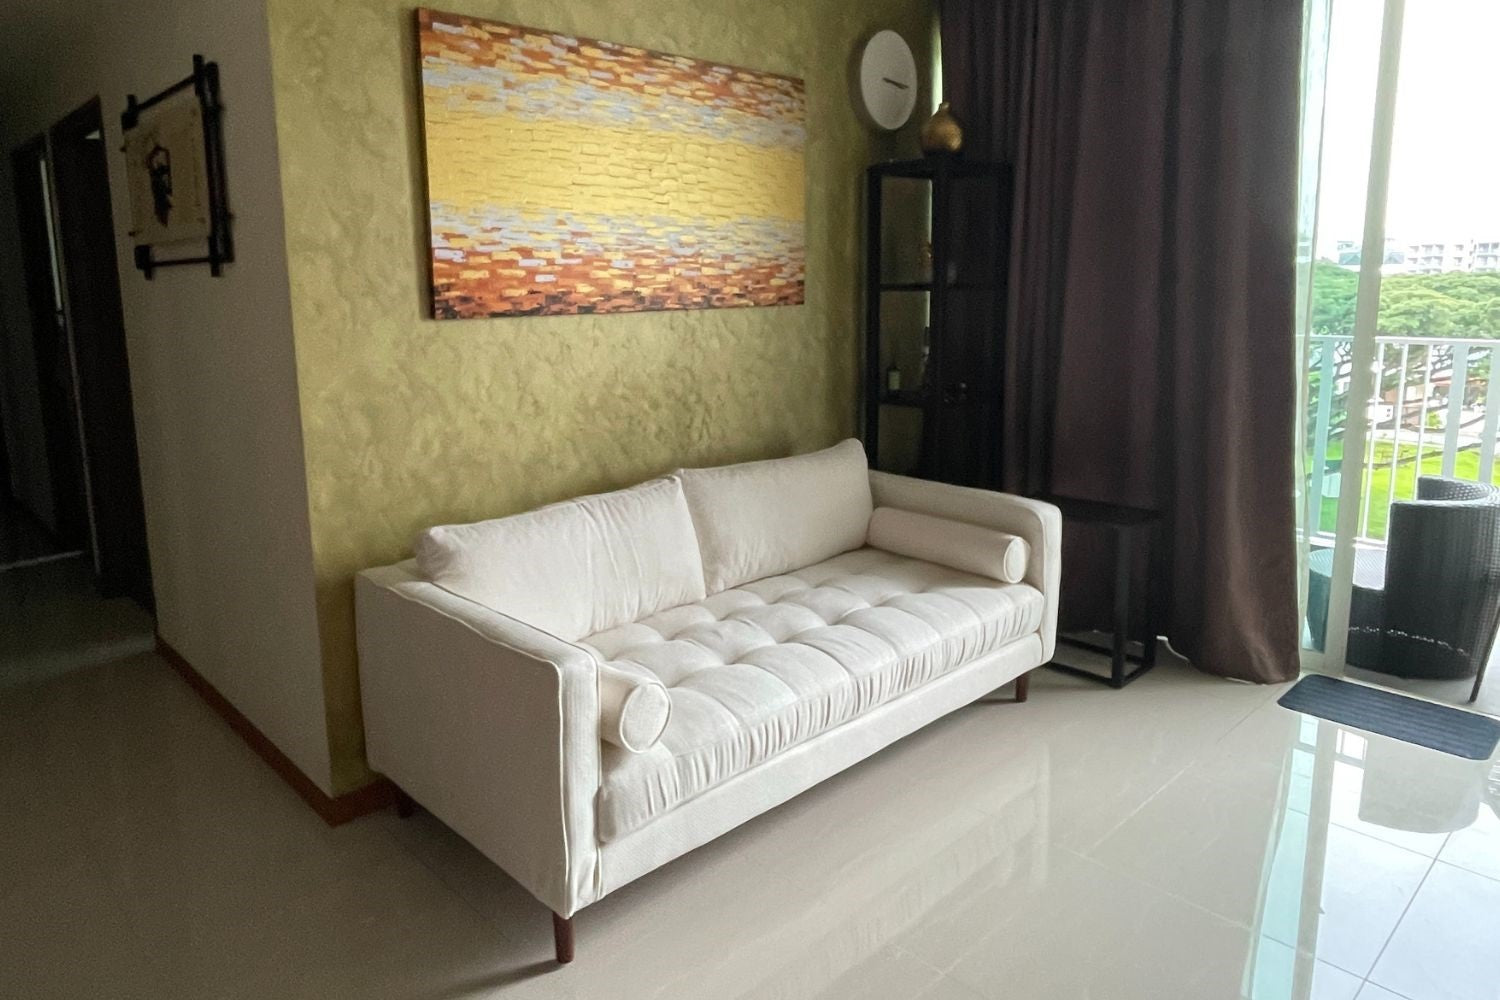 Castle 200cm white fabric sofa in customer's home